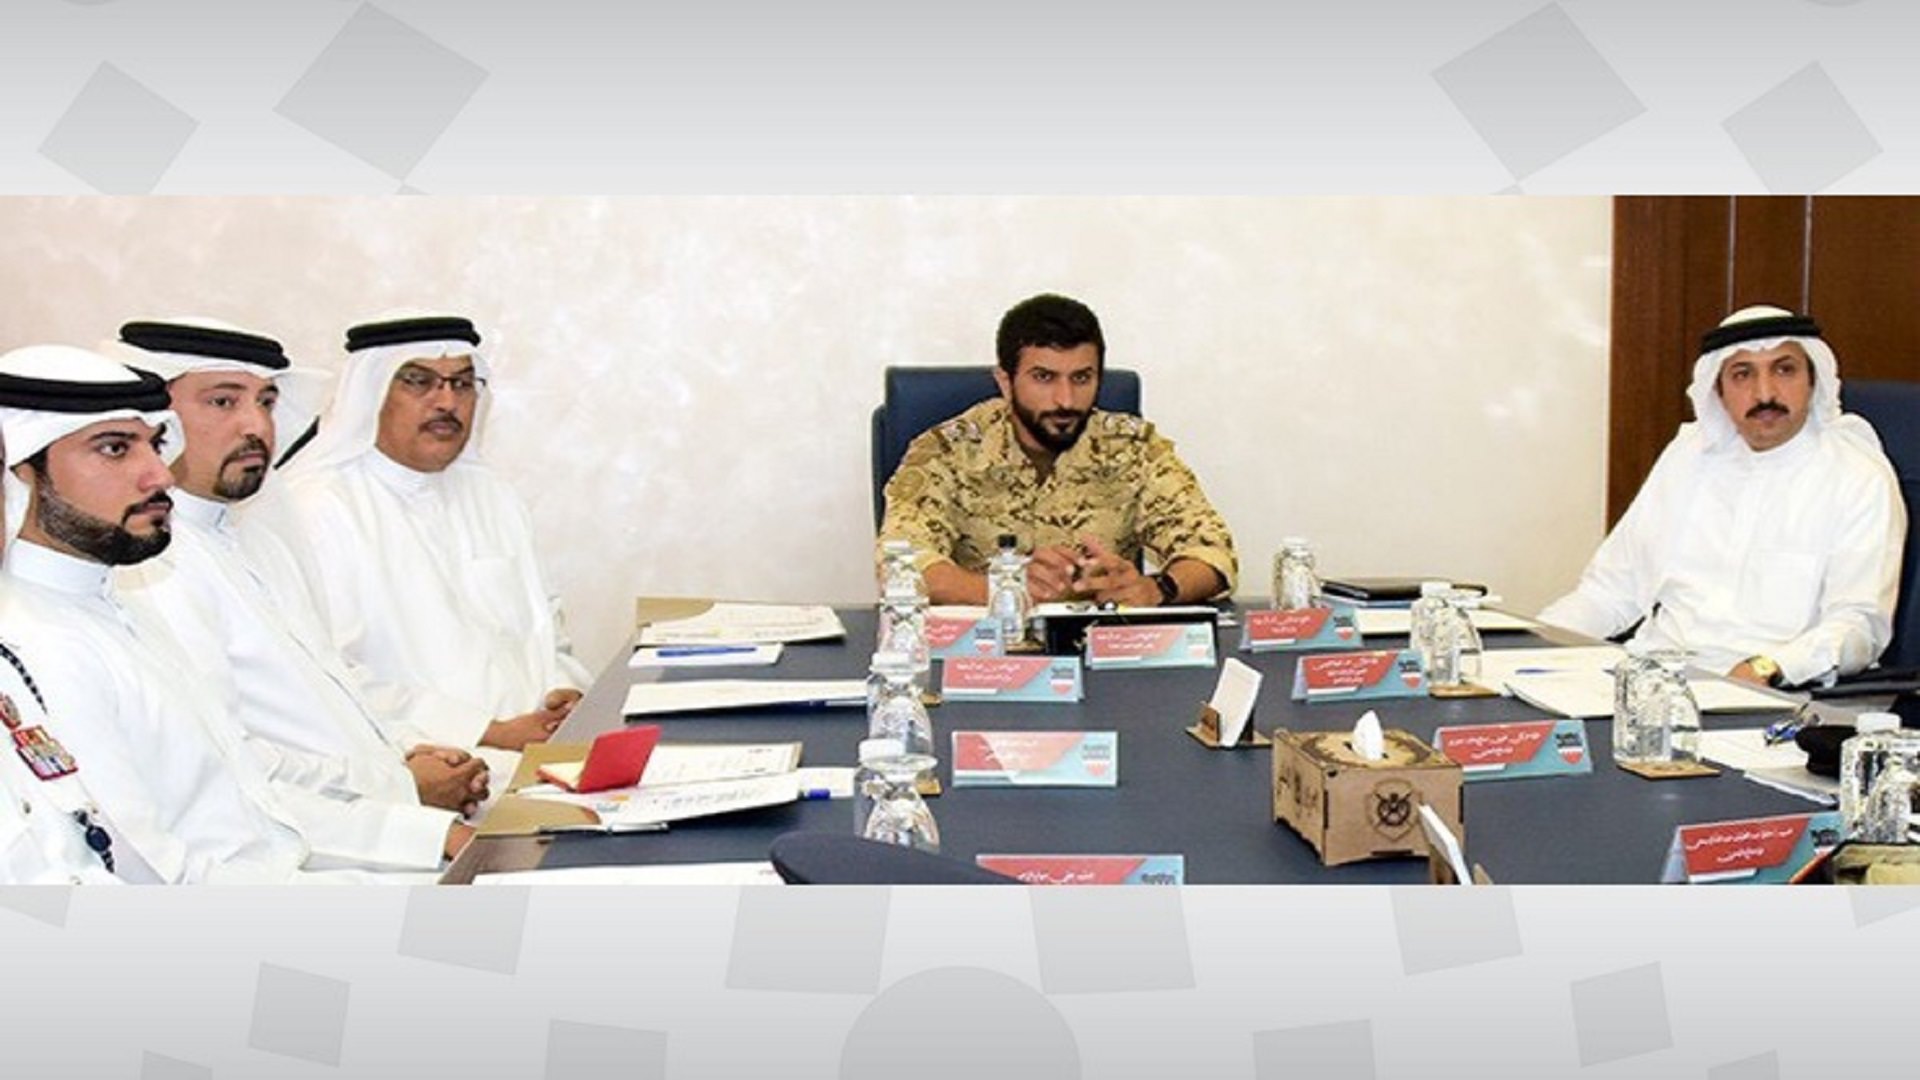 سمو قائد الحرس الملكي يترأس الاجتماع التنظيمي لمعرض ومؤتمر البحرين الدولي للدفاع 2019م